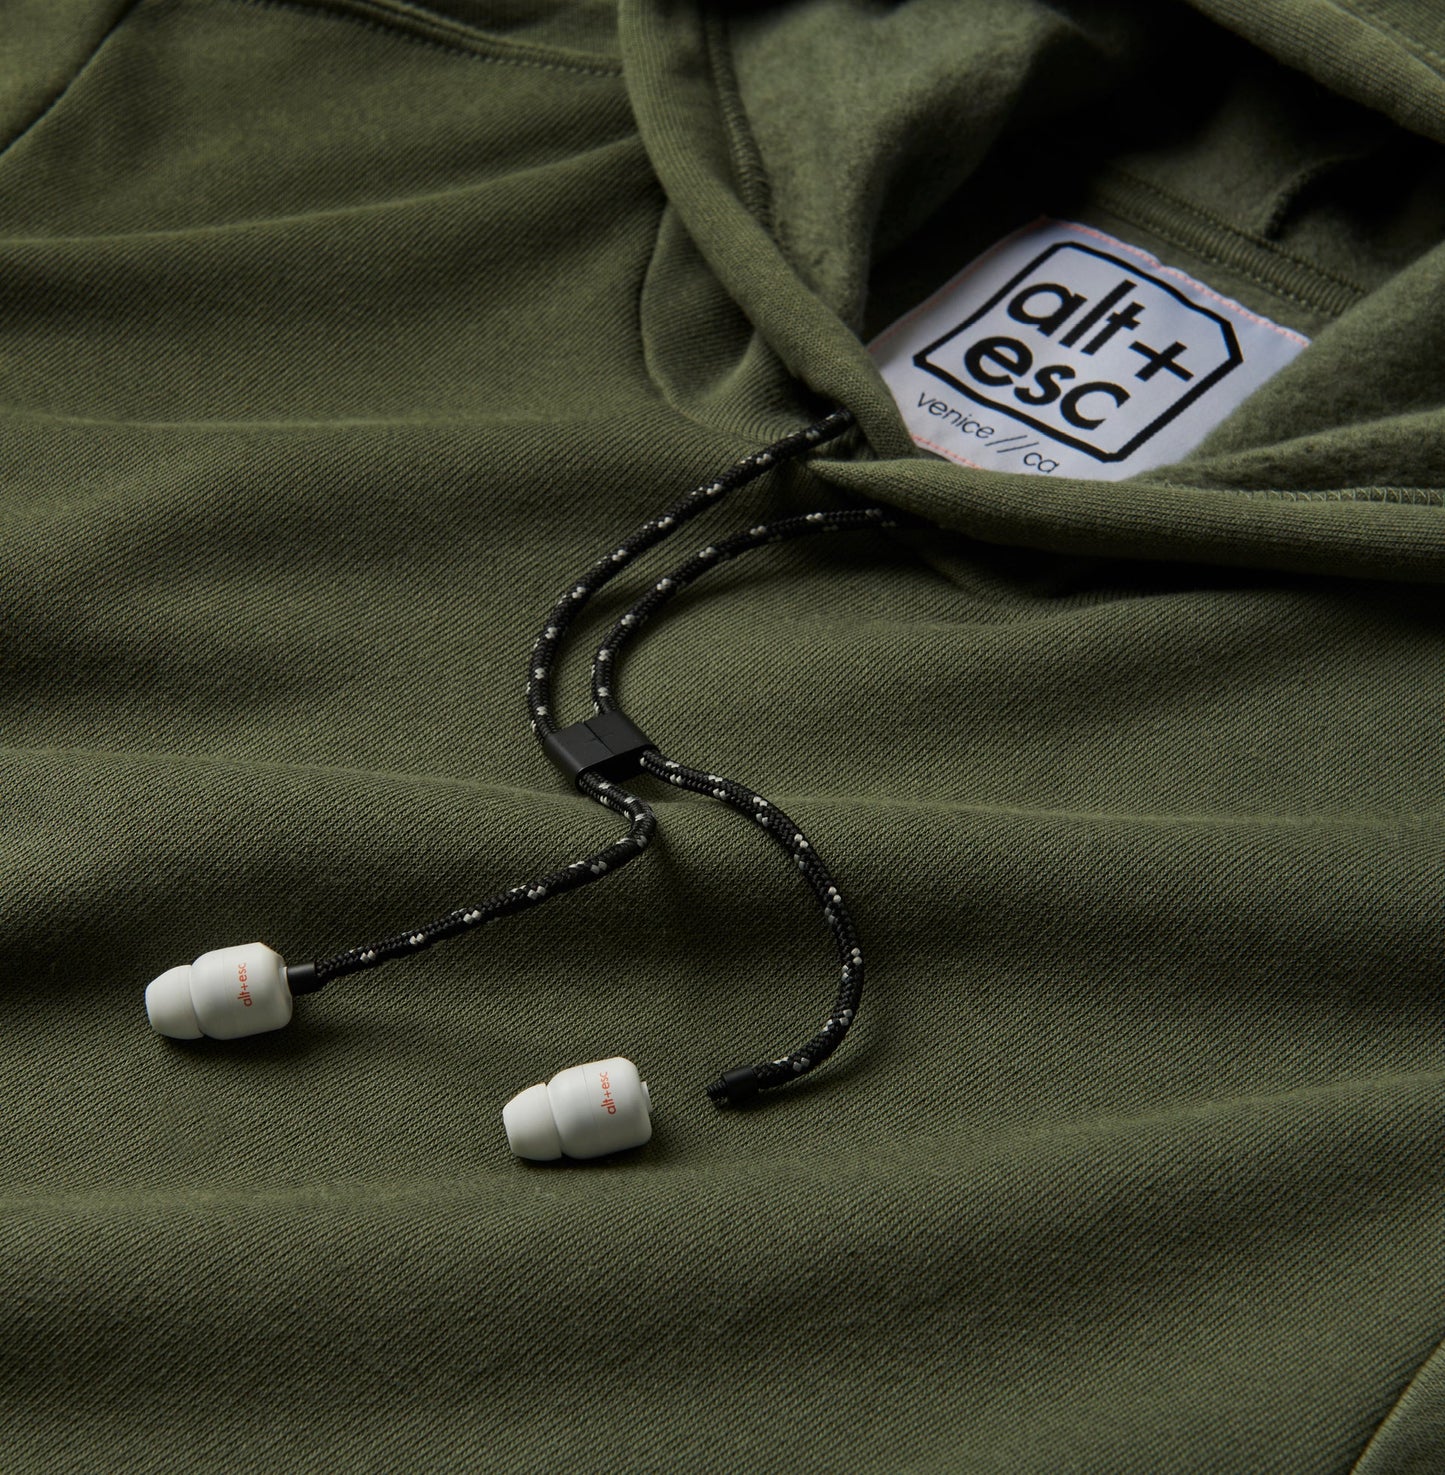 [wear] hoodie - olive